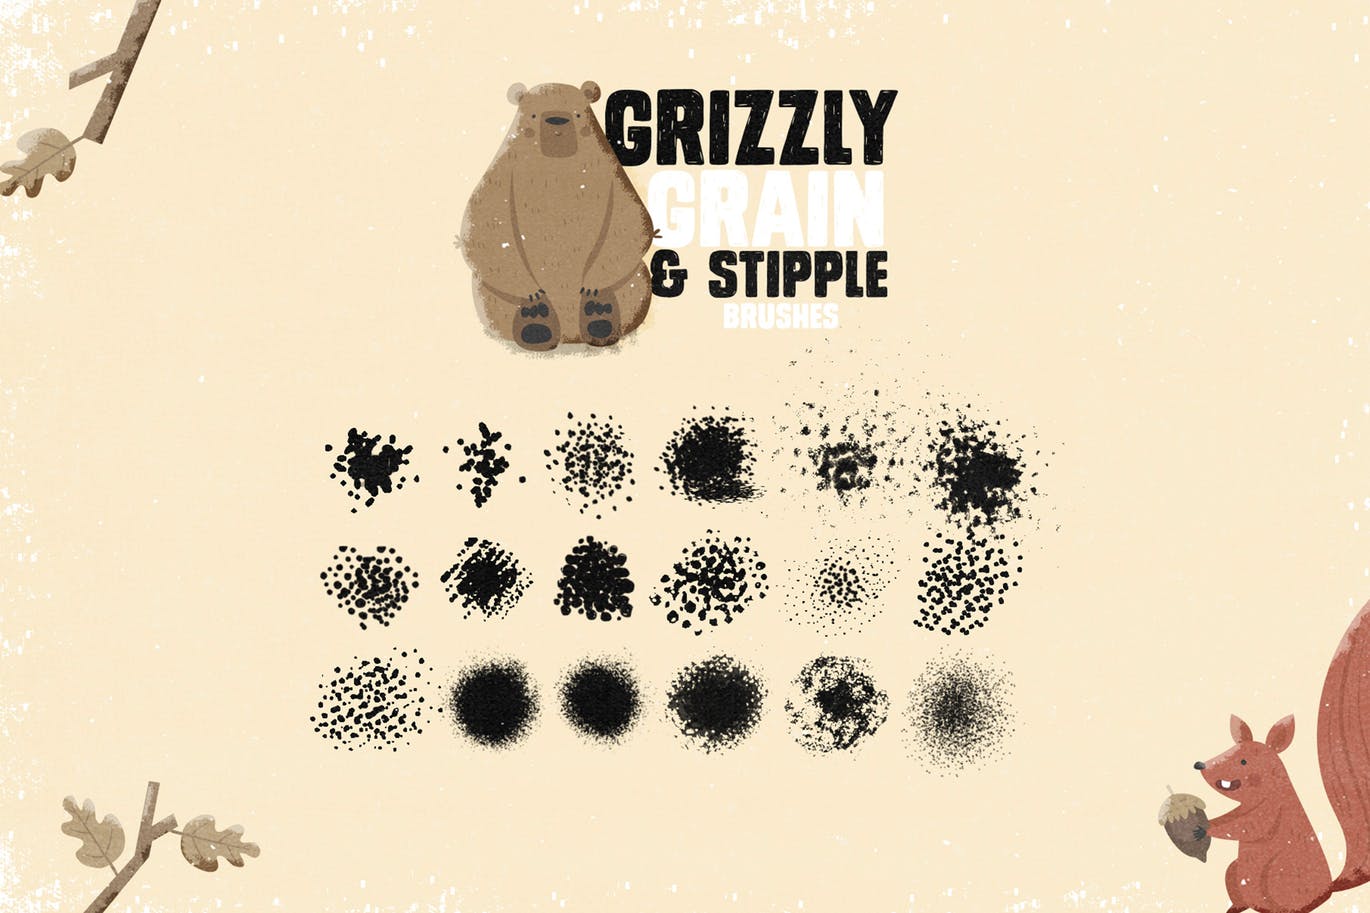 手绘设计师必备-流行的仿旧阴影效果点画创作PS笔刷蚂蚁素材精选 Grizzly Grain & Stipple Shader Brushes插图(5)